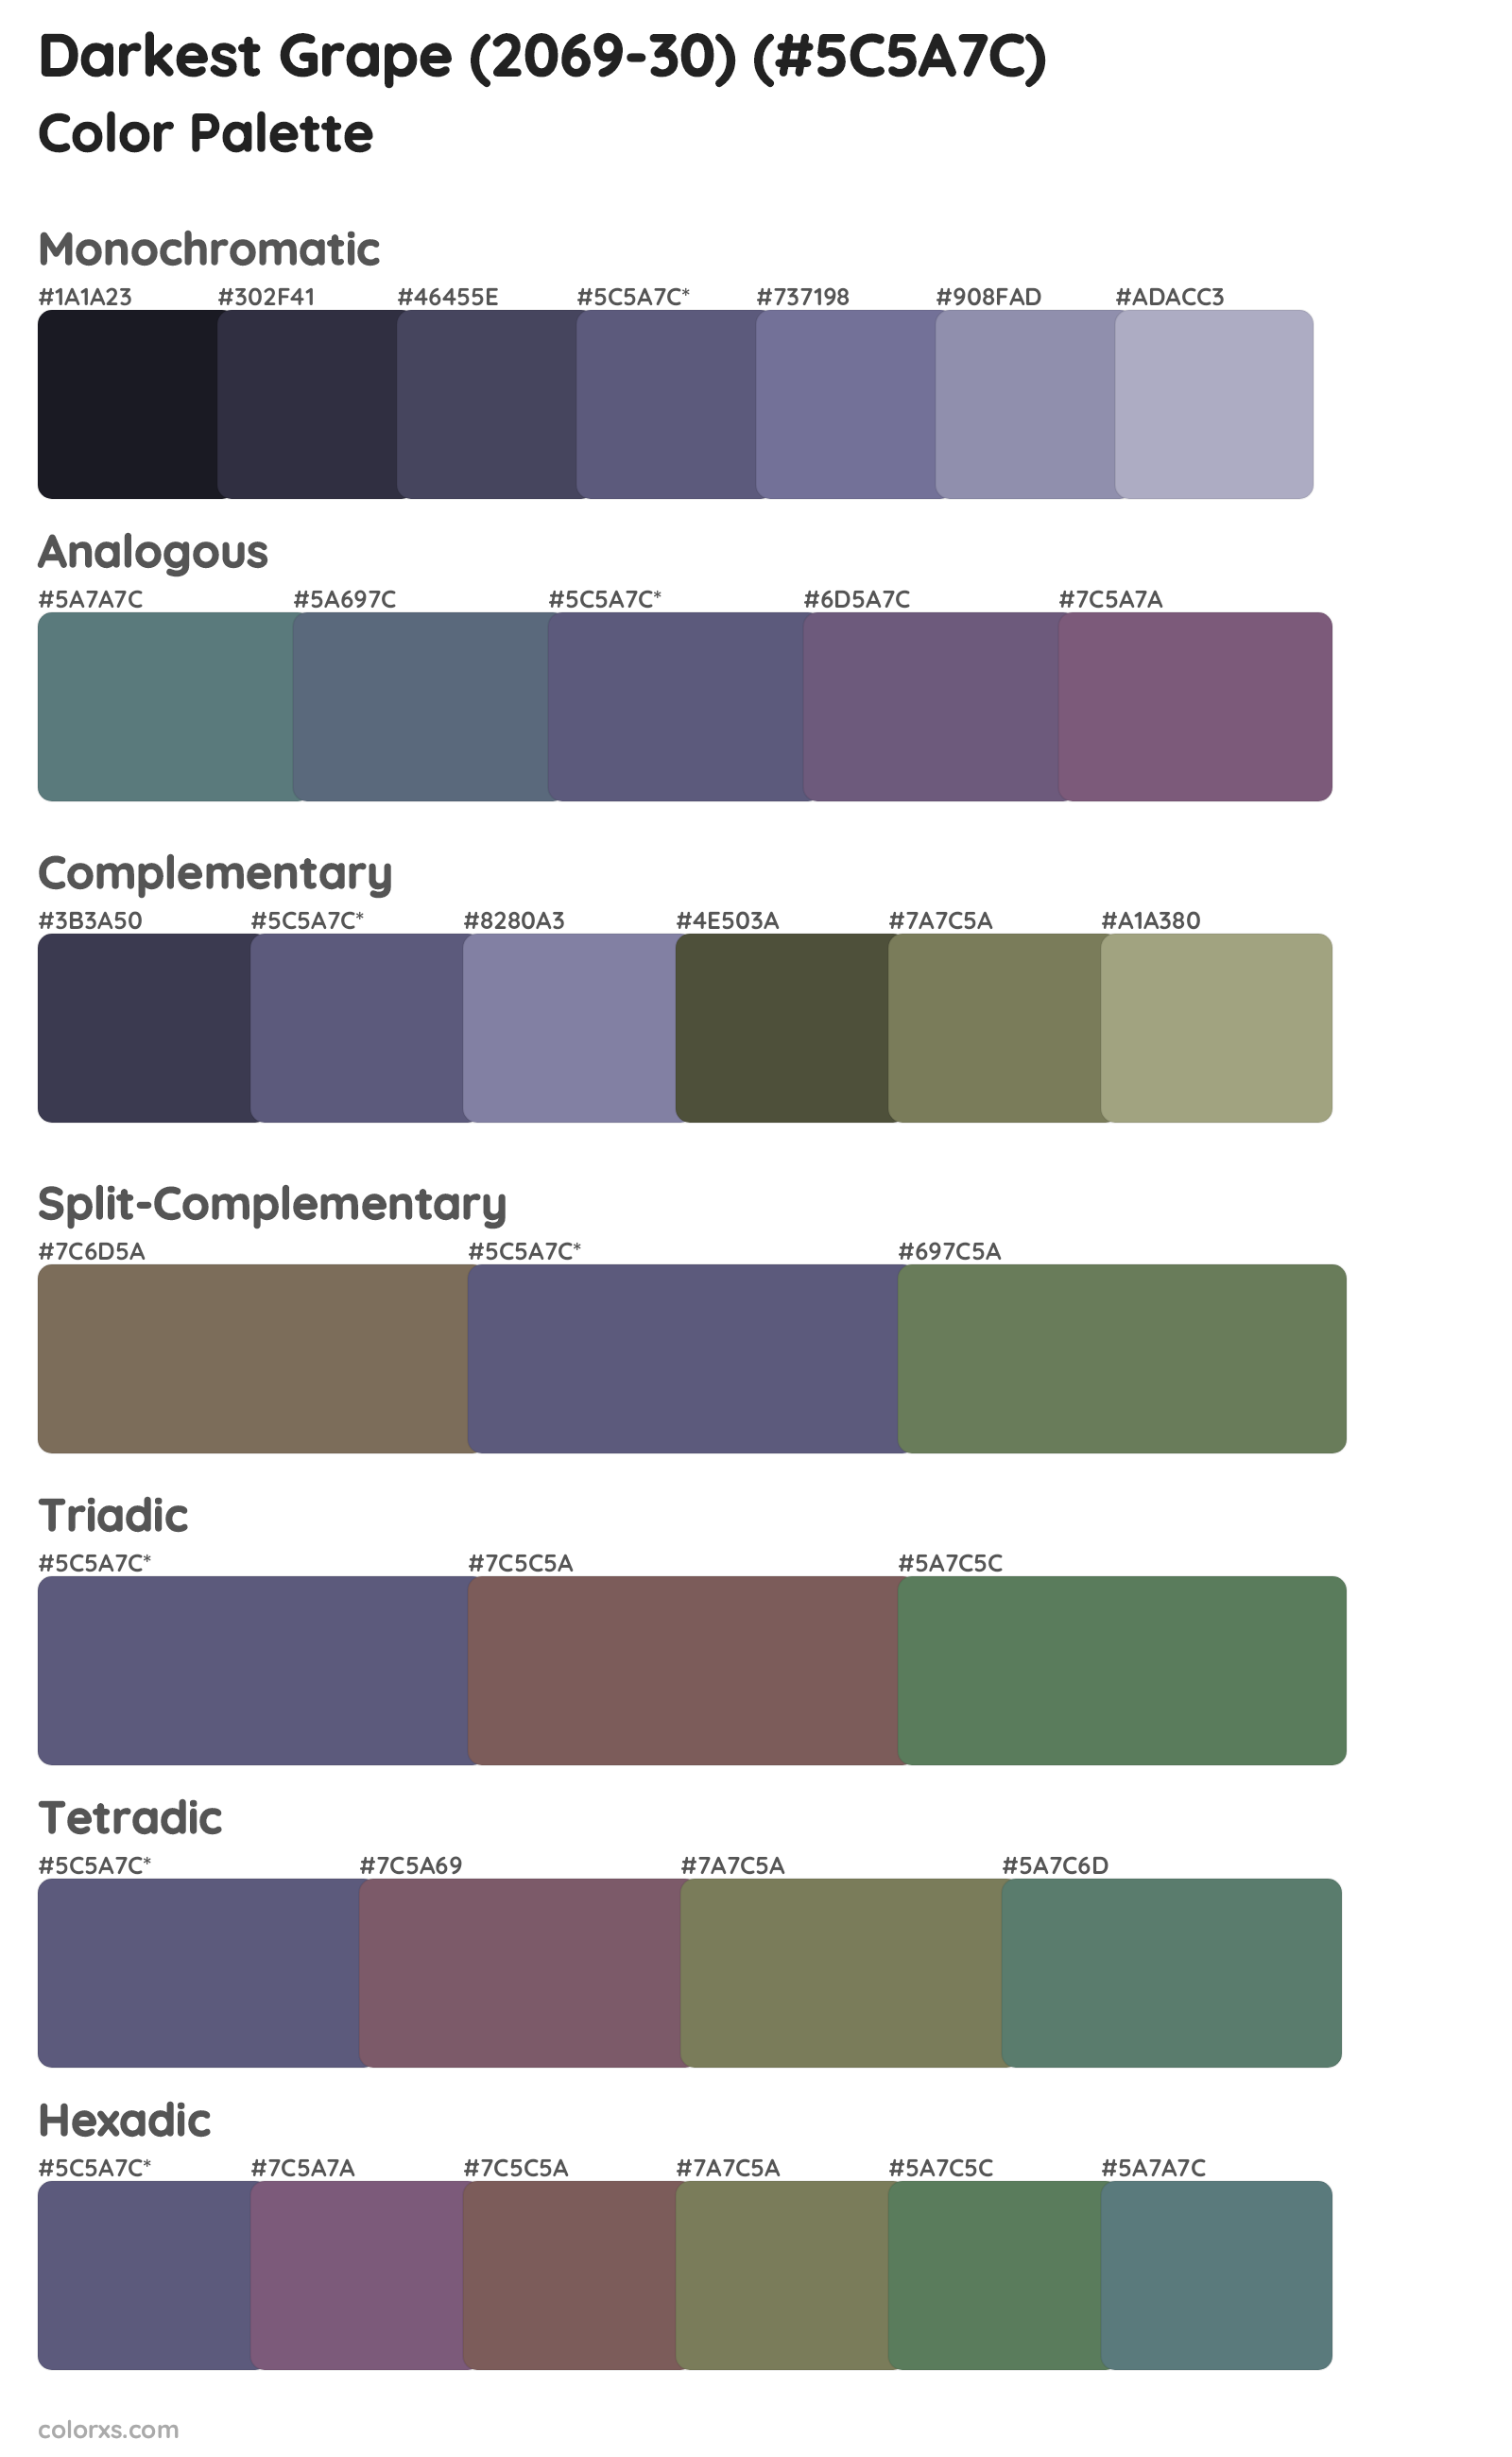 Darkest Grape (2069-30) Color Scheme Palettes